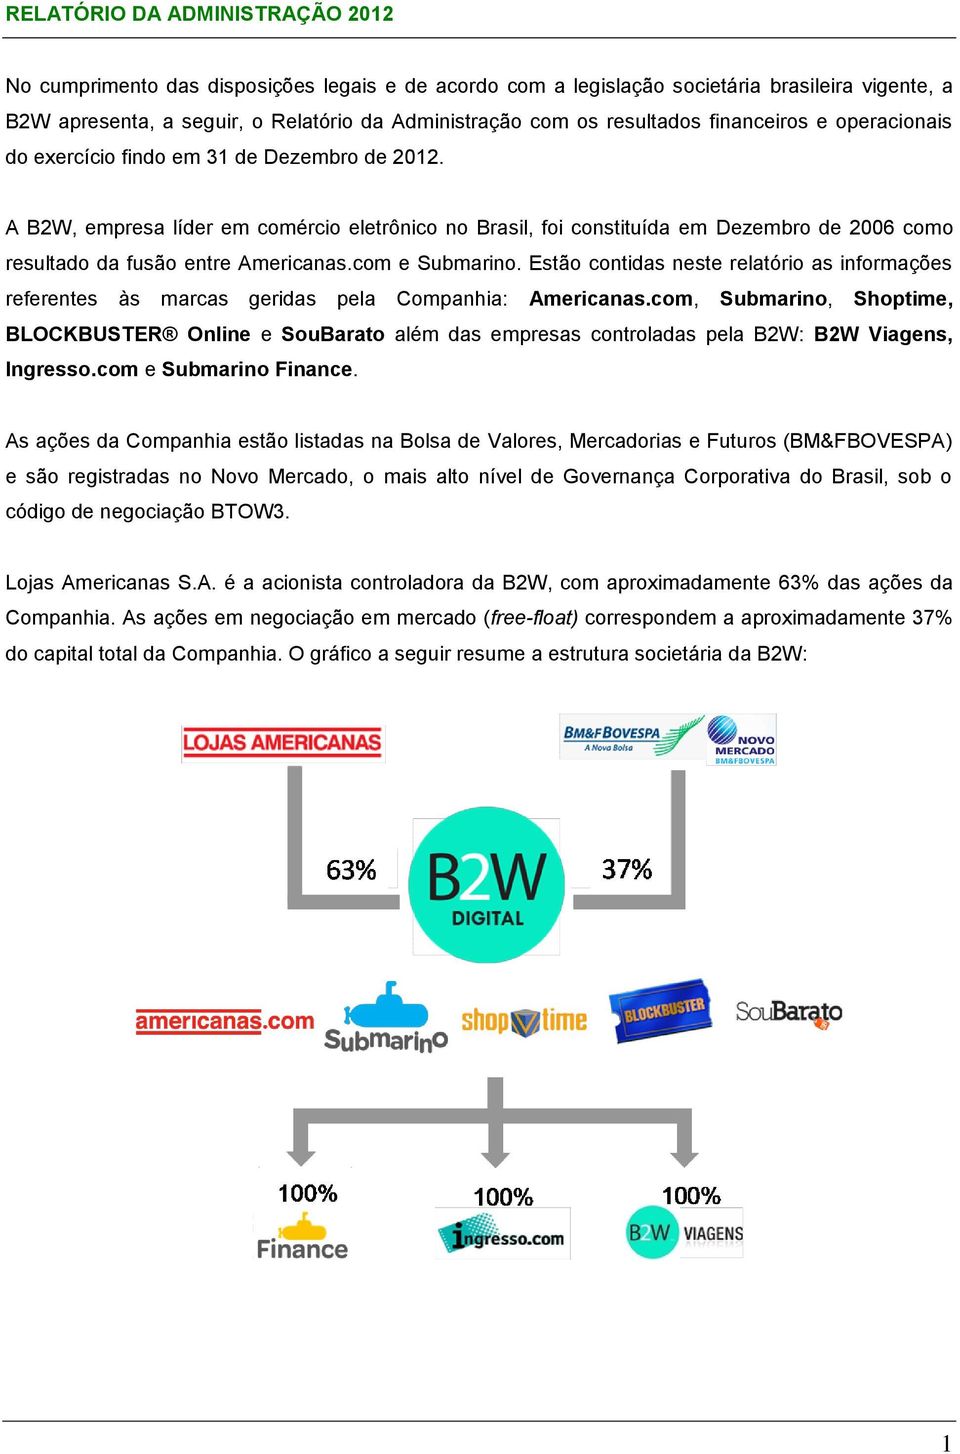 A B2W, empresa líder em comércio eletrônico no Brasil, foi constituída em Dezembro de 2006 como resultado da fusão entre Americanas.com e Submarino.